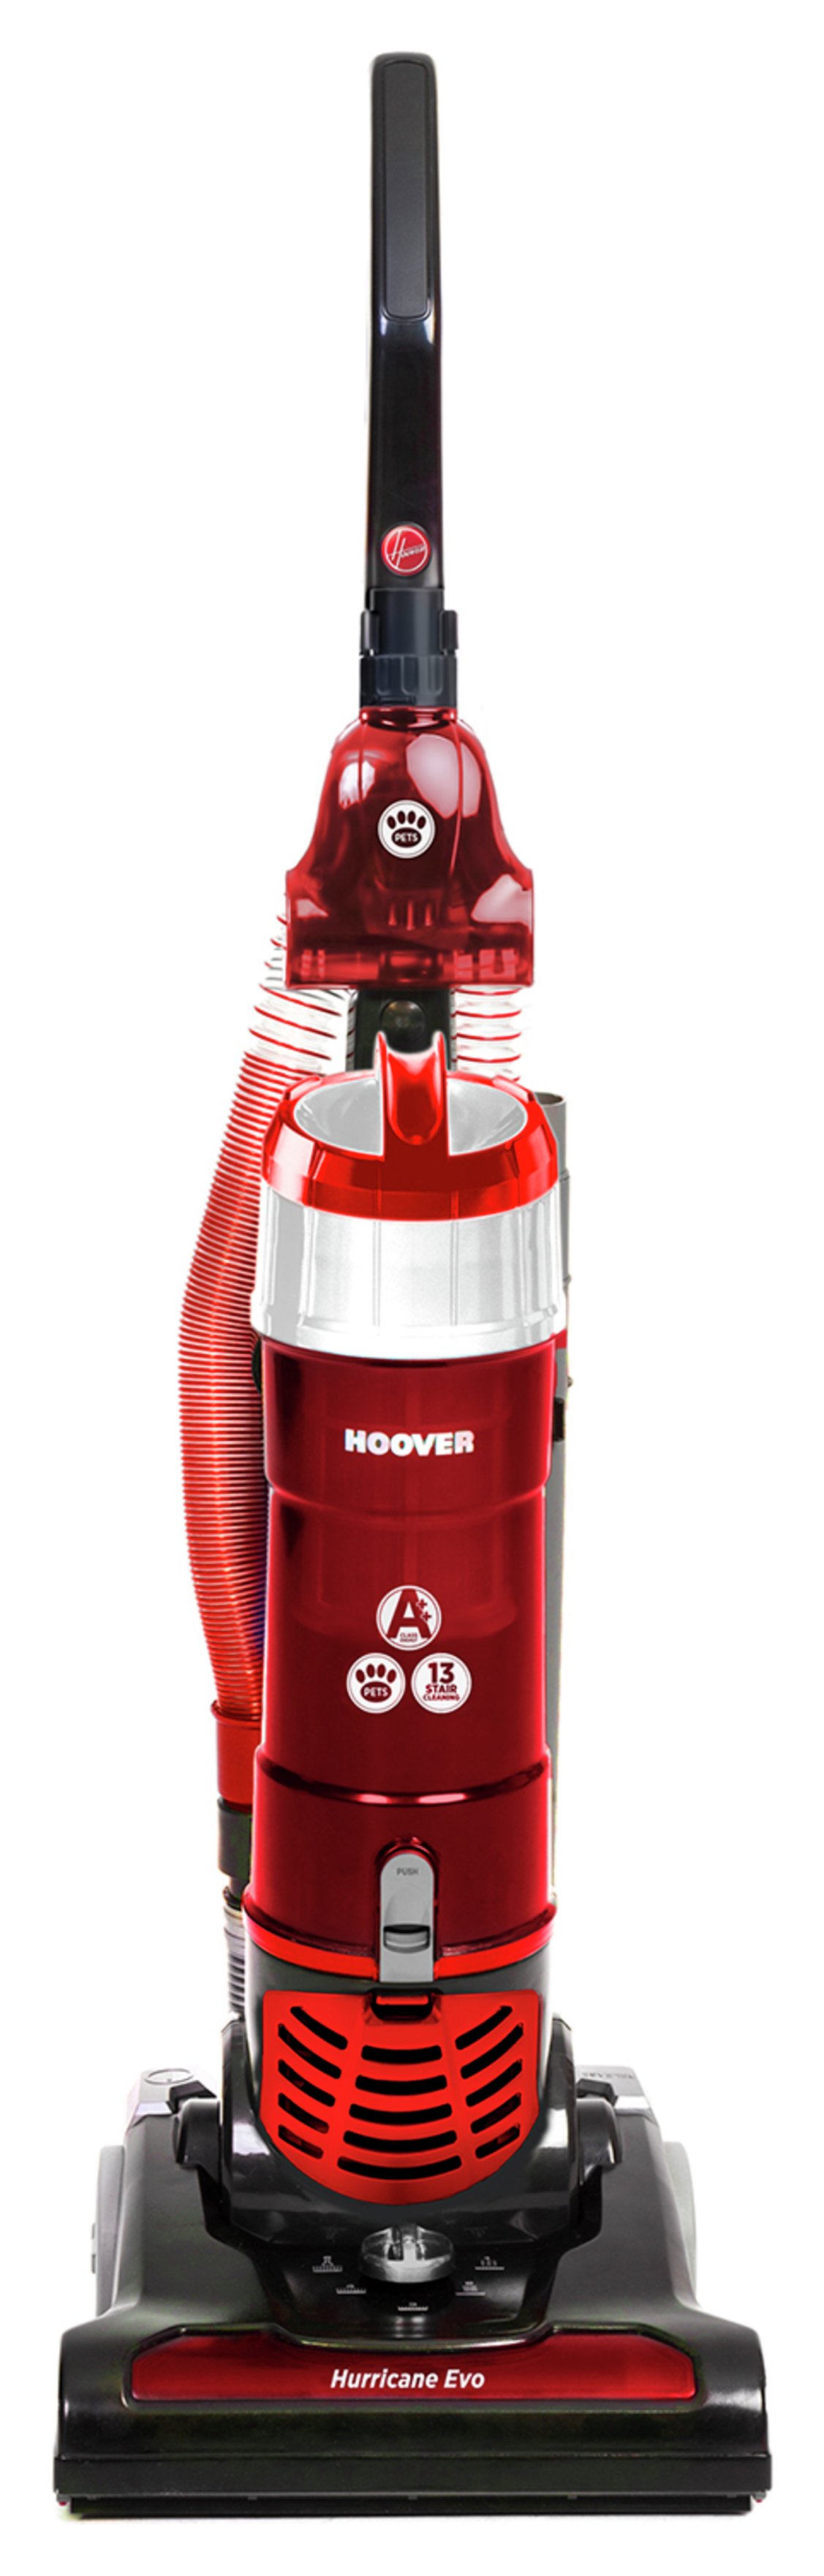 Hoover Hurricane Evo Pets Bagless Upright Vacuum Cleaner